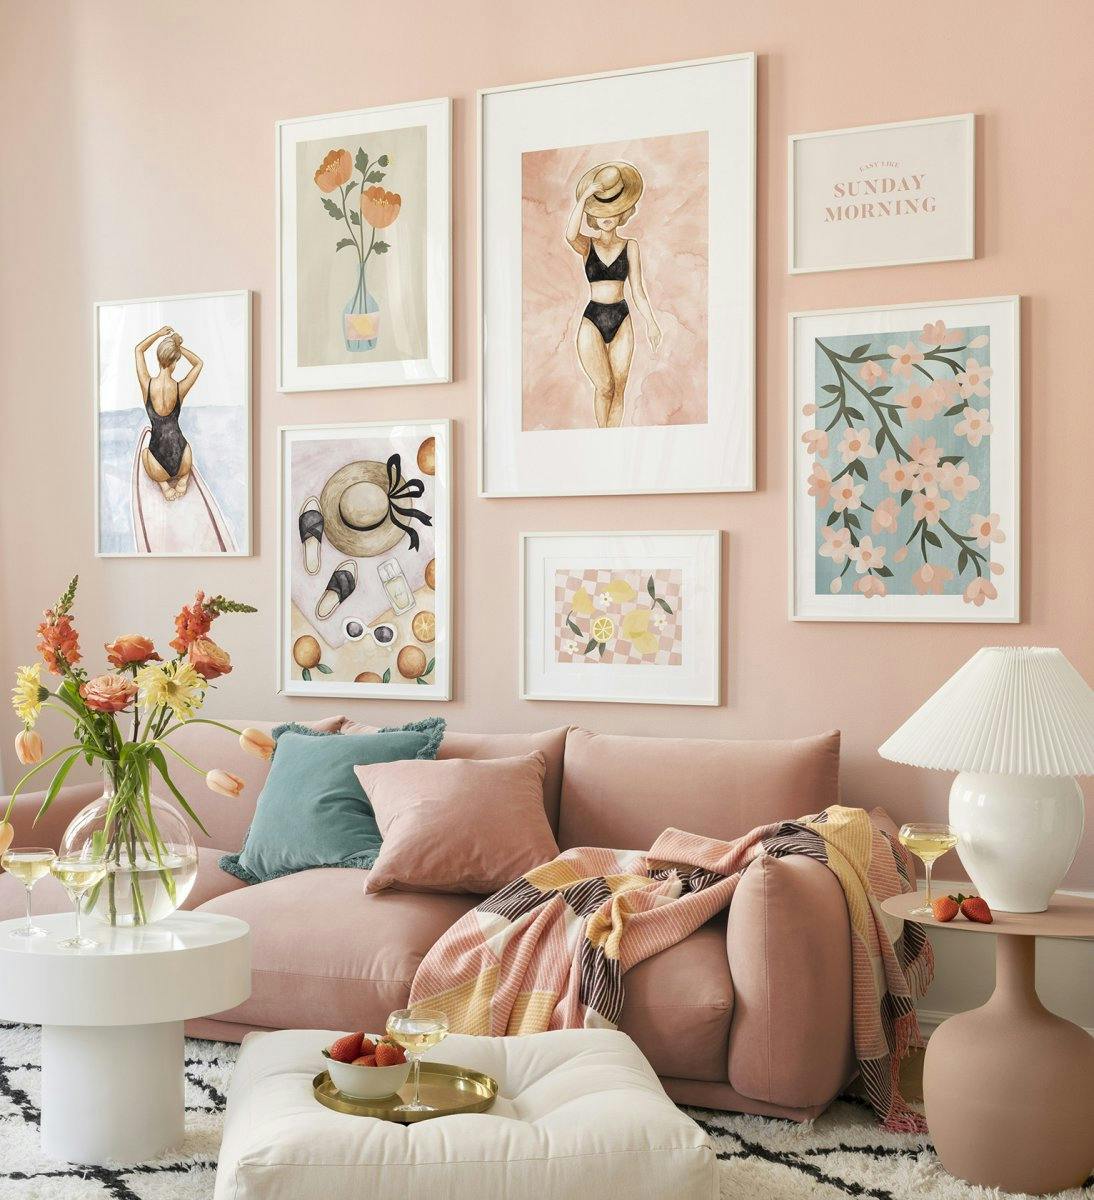 Színes kép fal virágos poszterekkel és illusztrációkkal rózsaszínben, fehér képkeretekkel a nappaliban